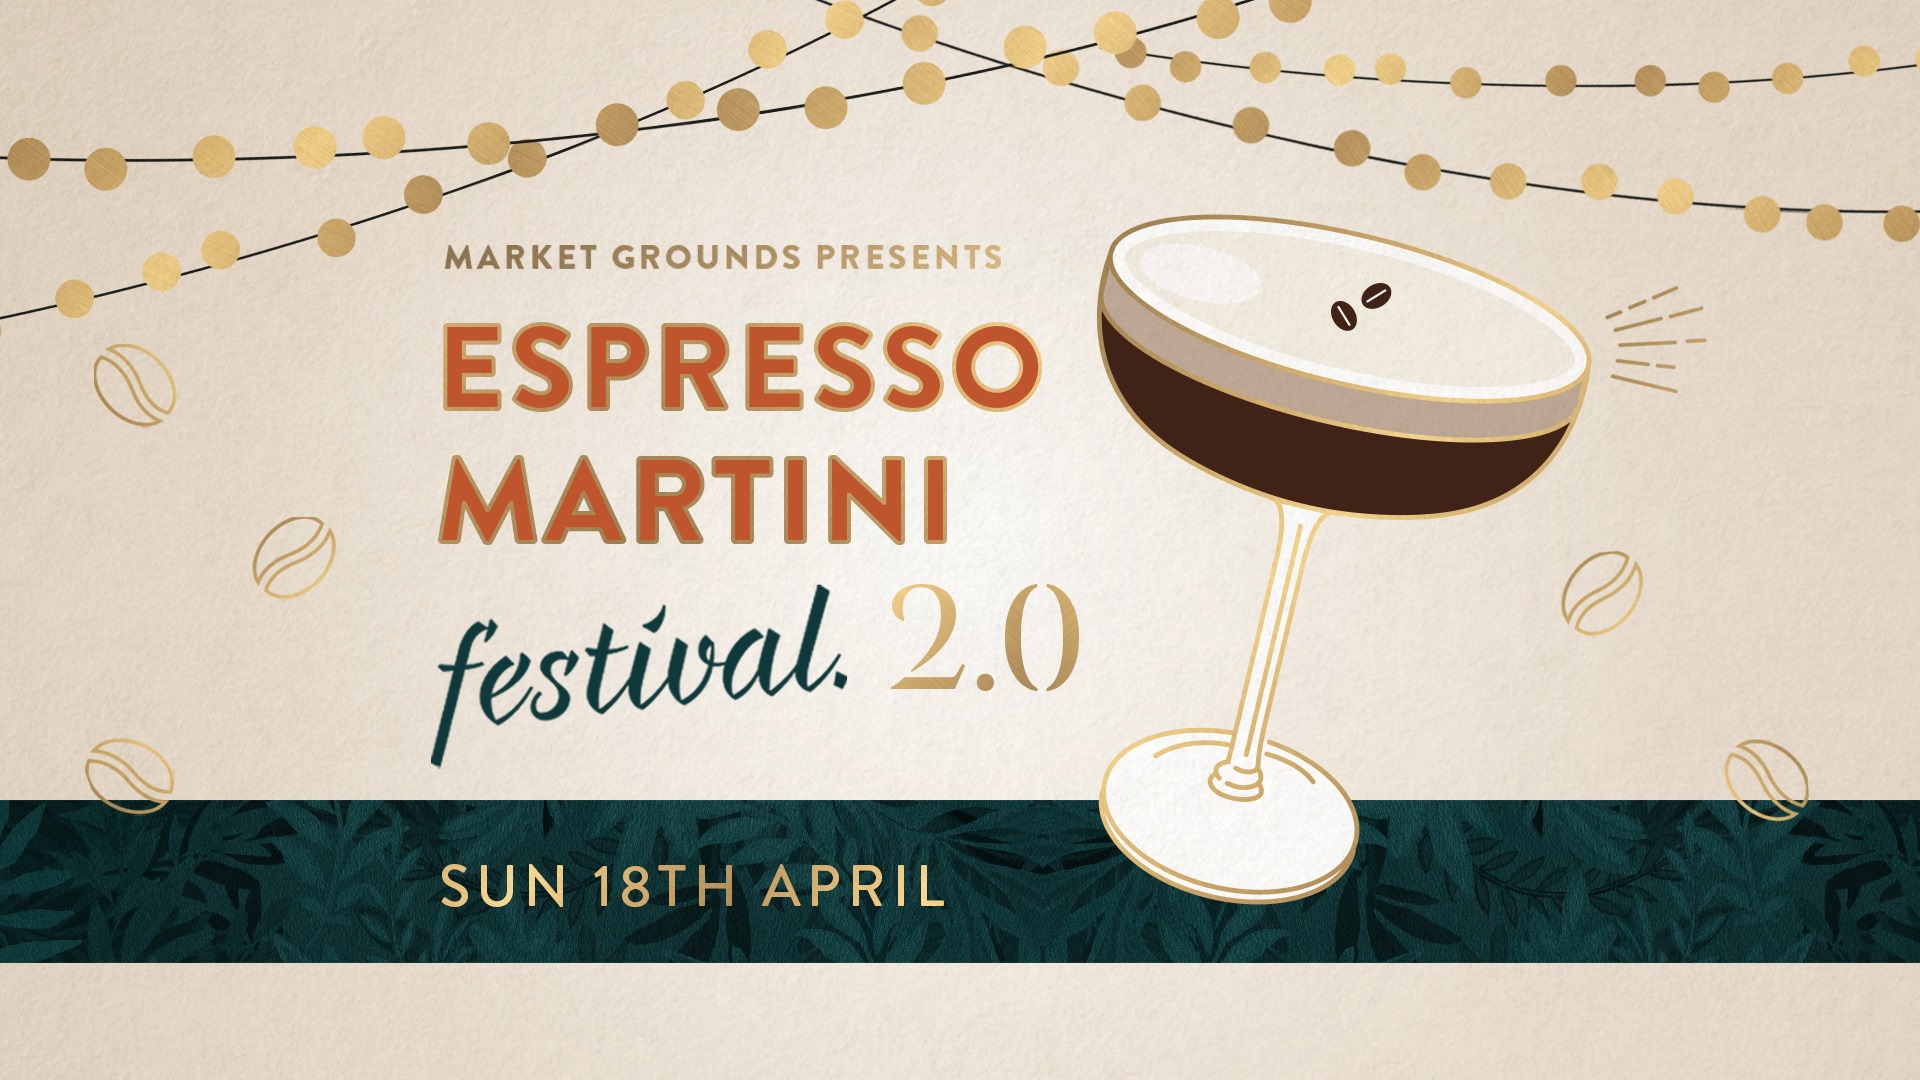 Espresso Martini Festival 2.0 To Perth